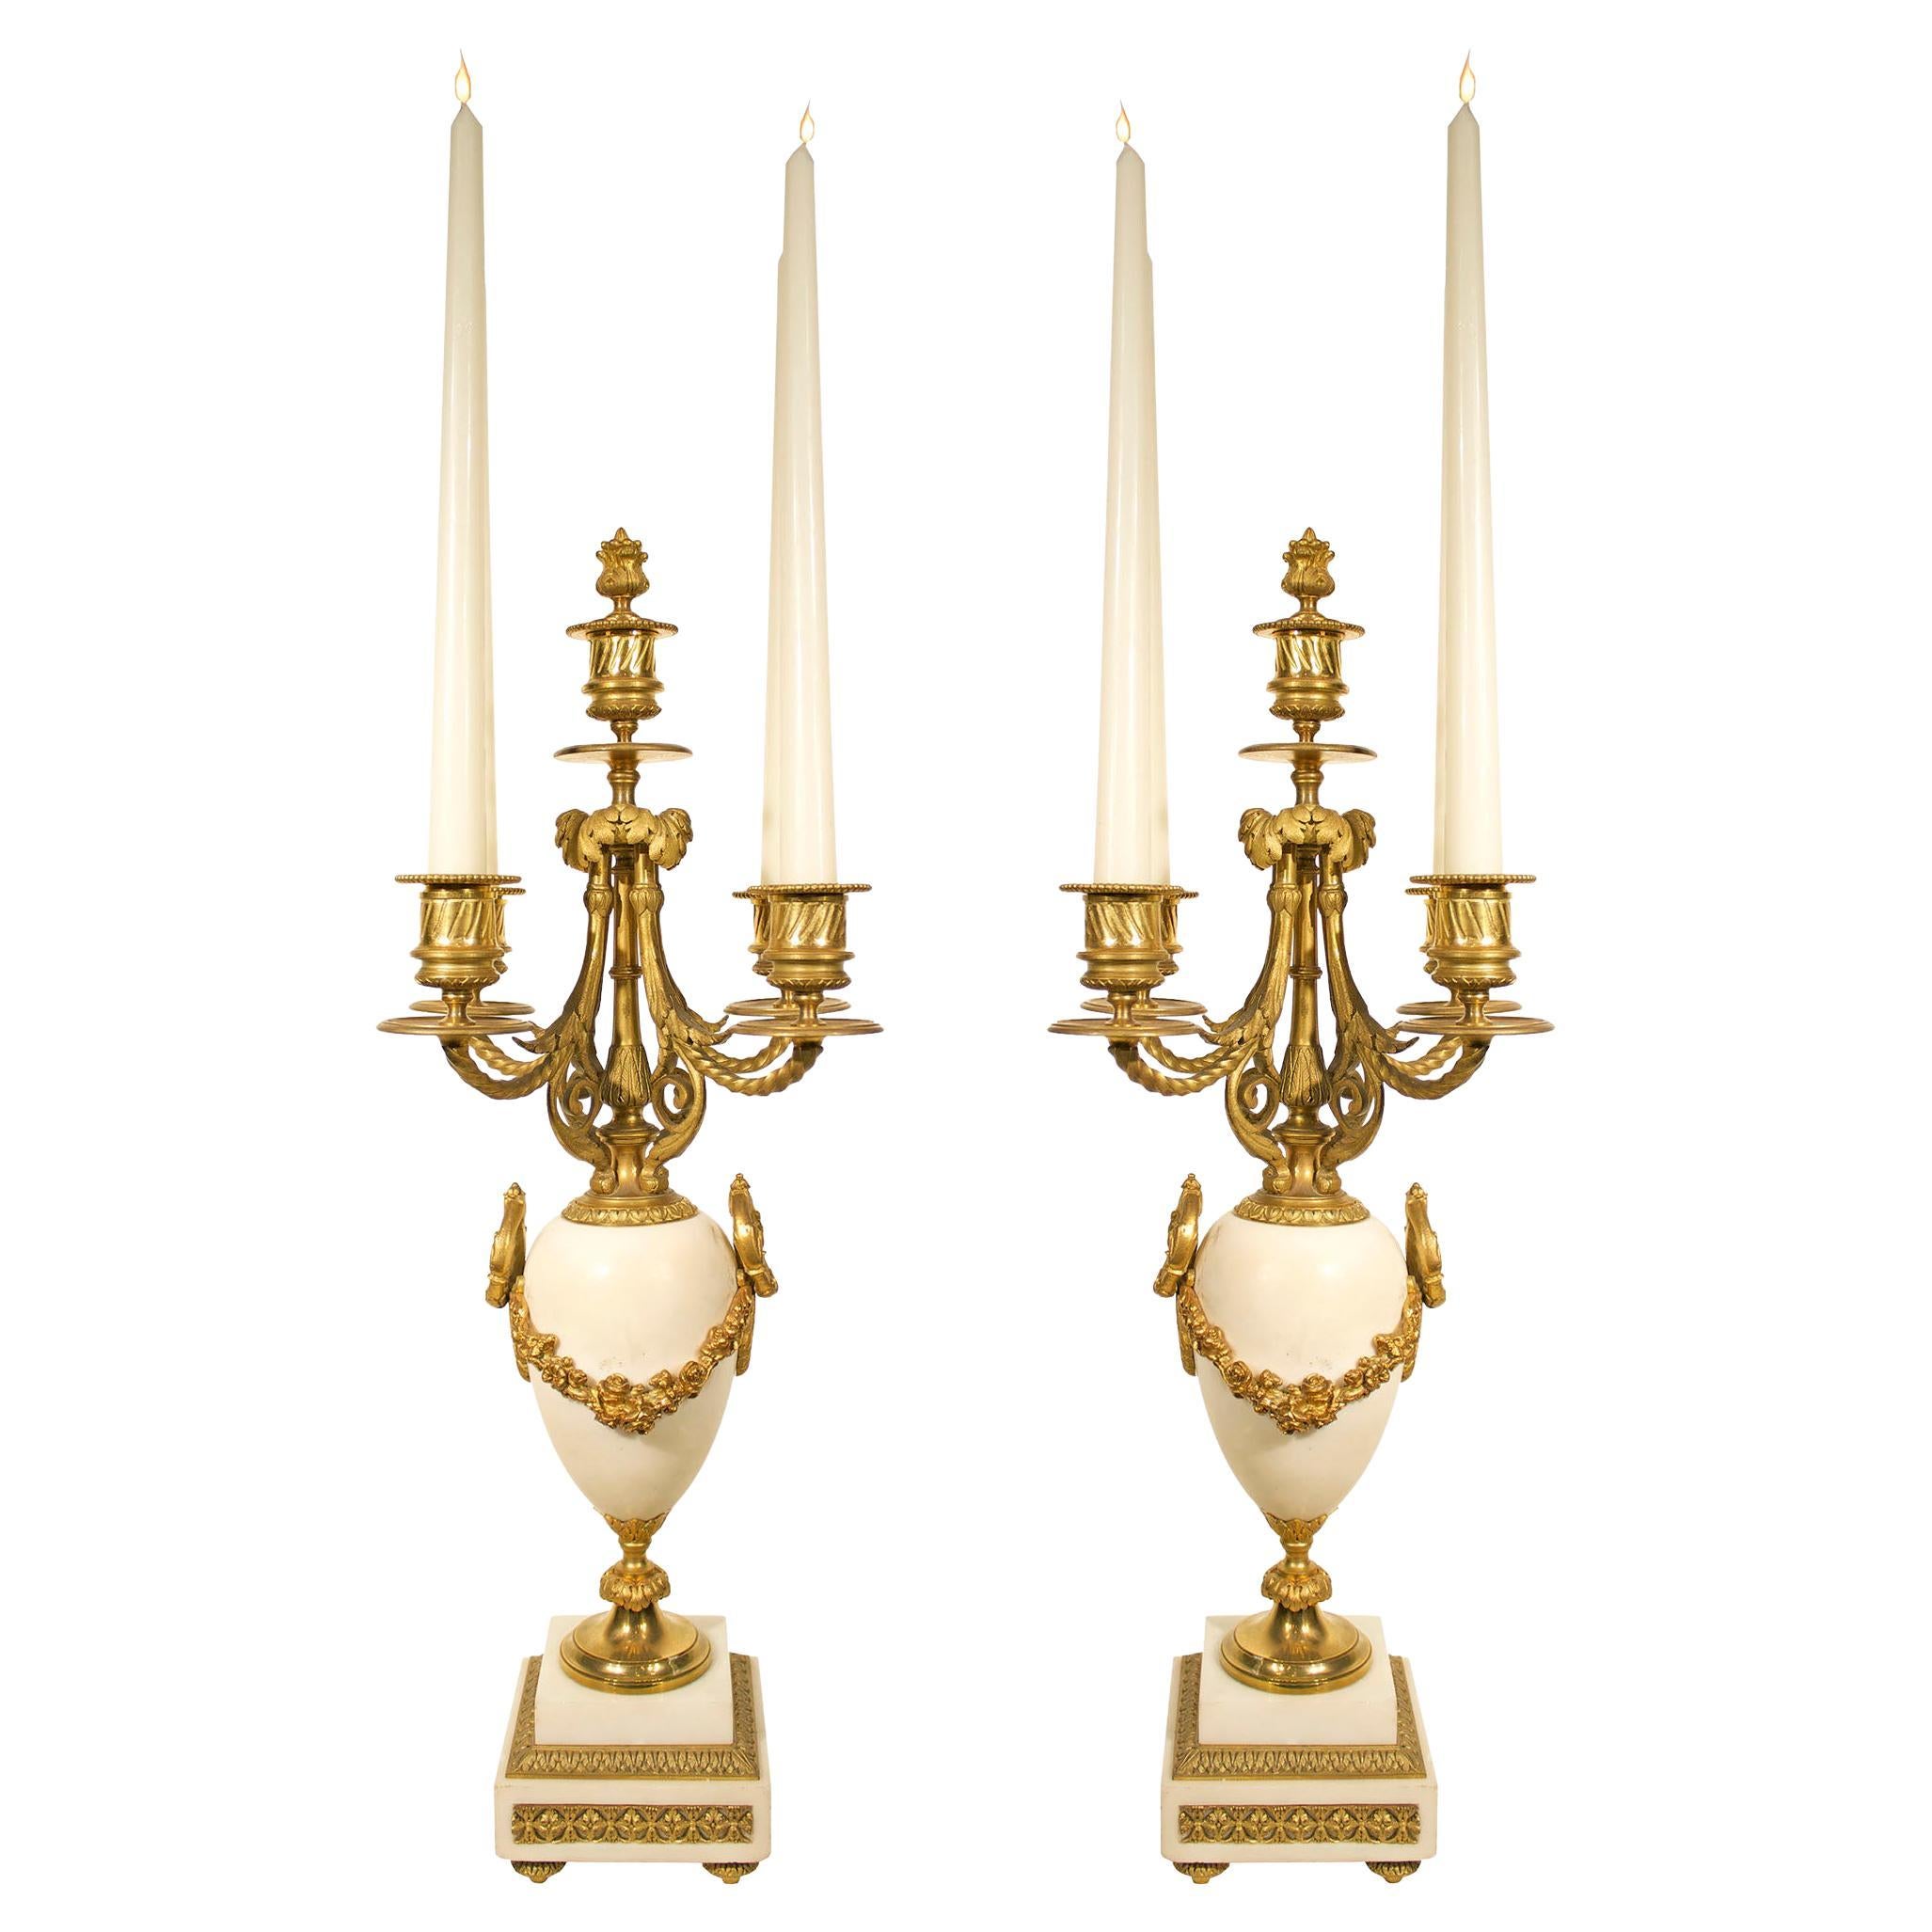 Paire de candélabres français de style Louis XVI en marbre et bronze doré du milieu du XIXe siècle